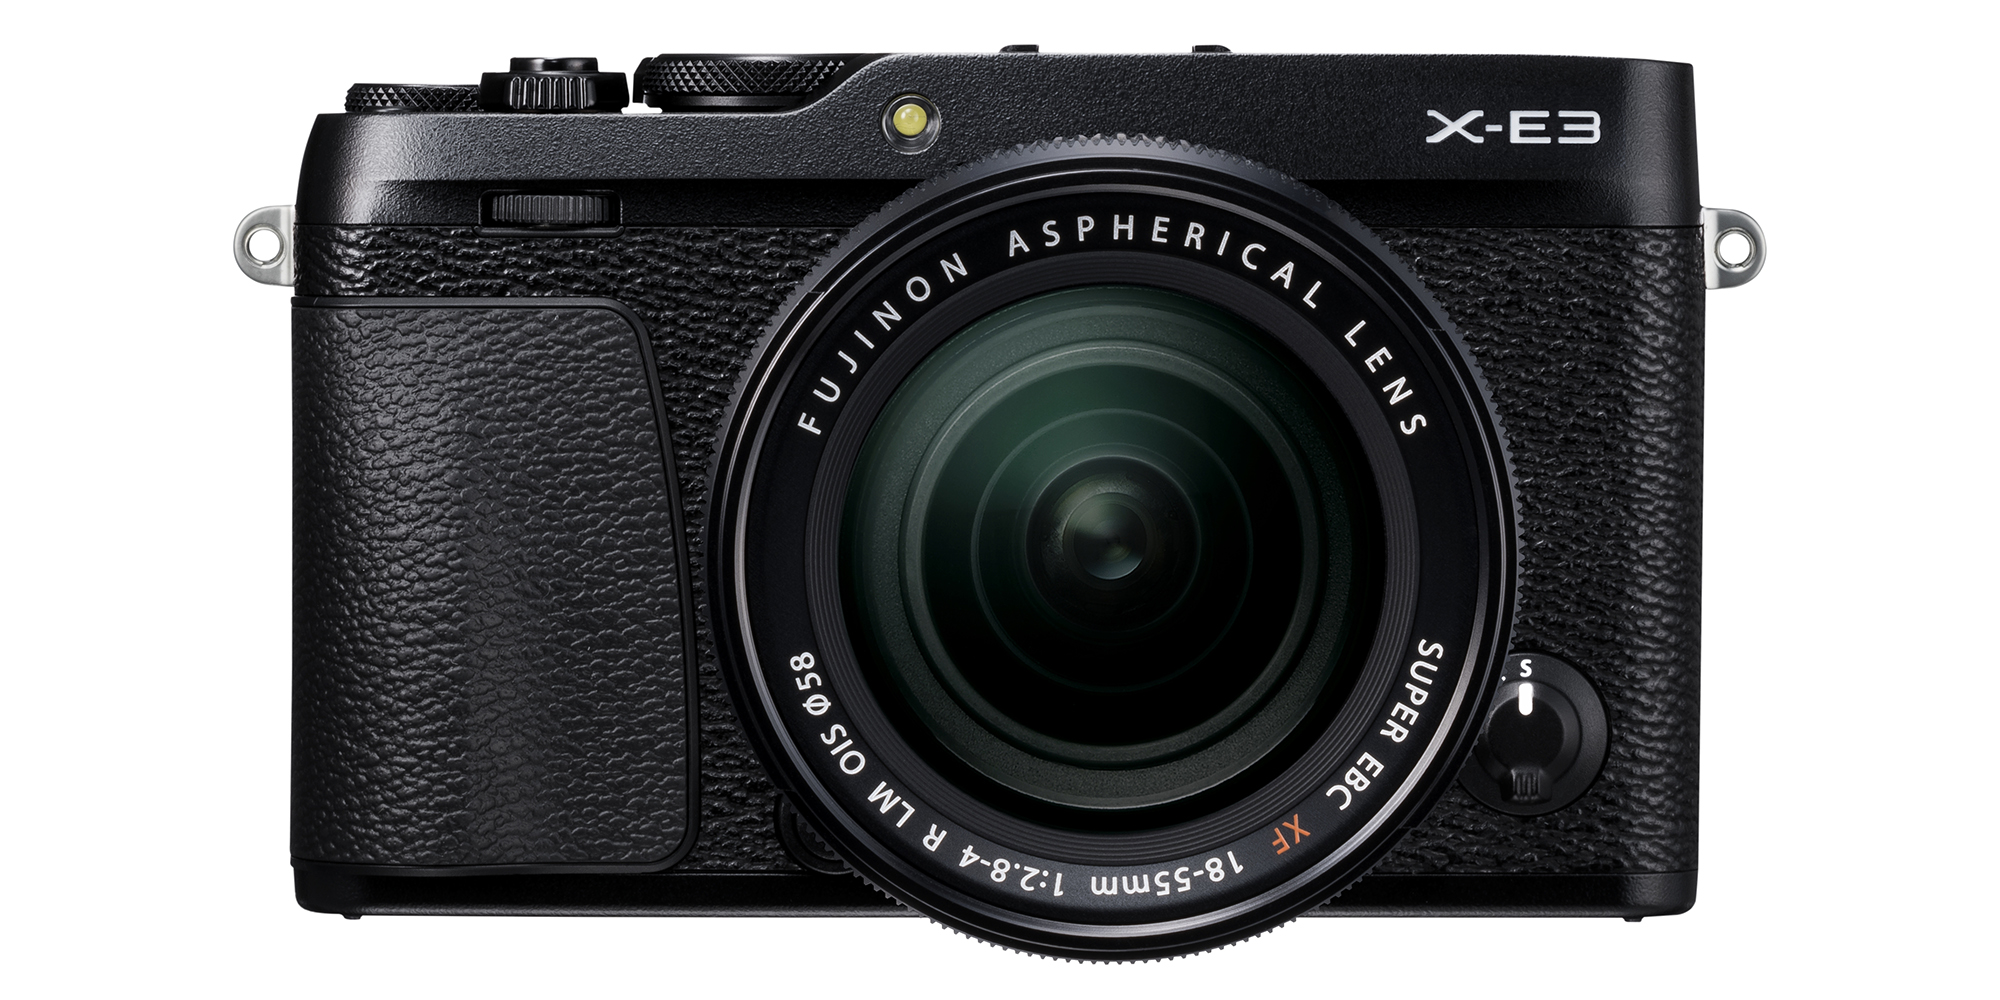 Fujifilm takes the wraps off new 4K-enabled X-E3 mirrorless camera